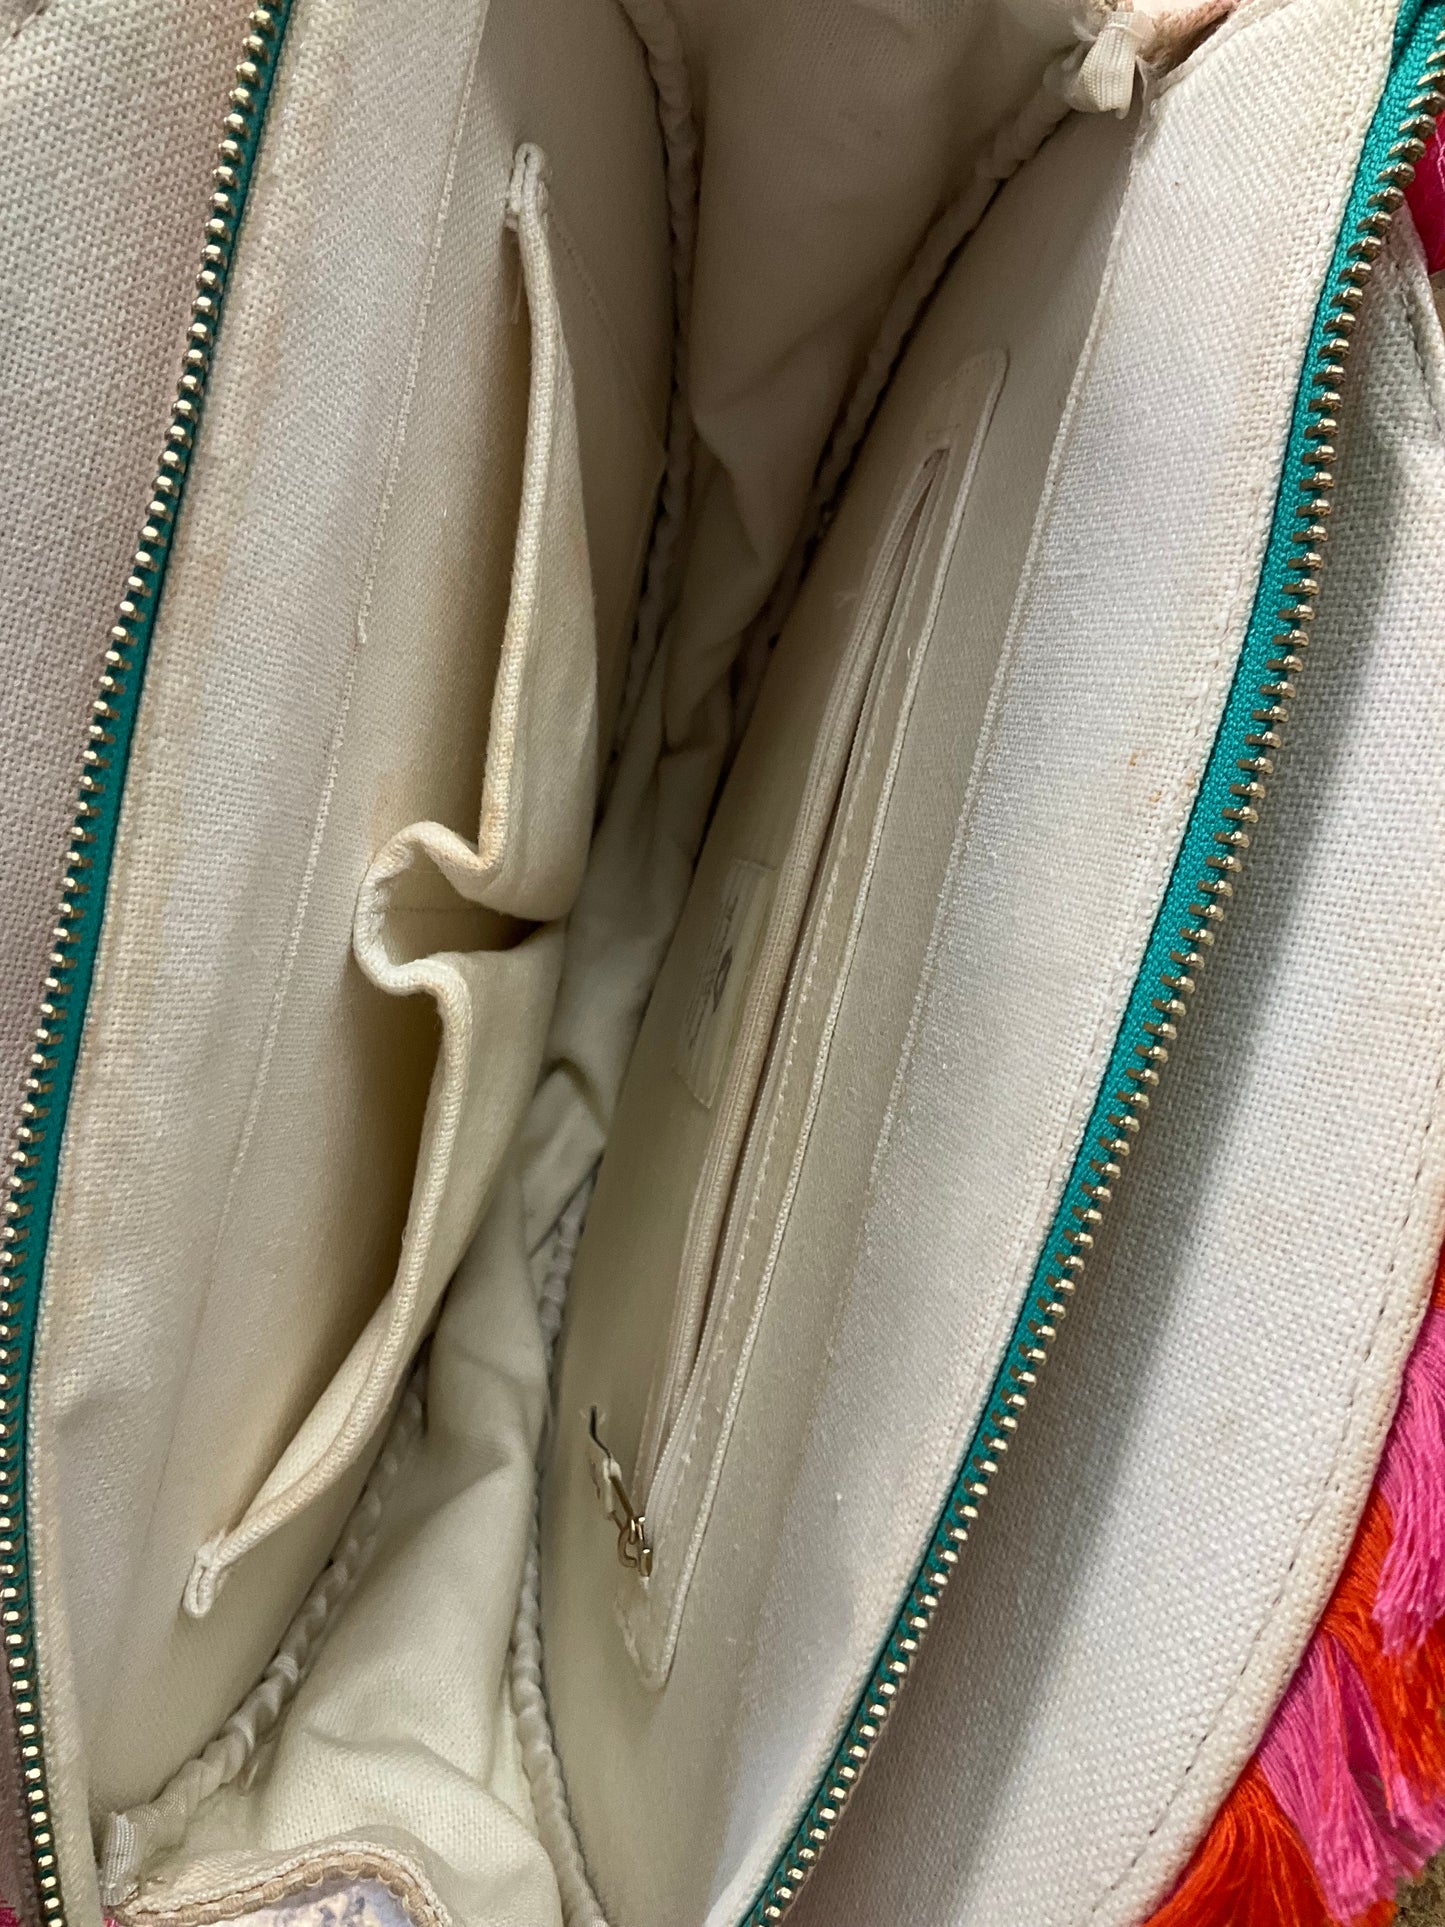 Handbag By Spartina  Size: Medium